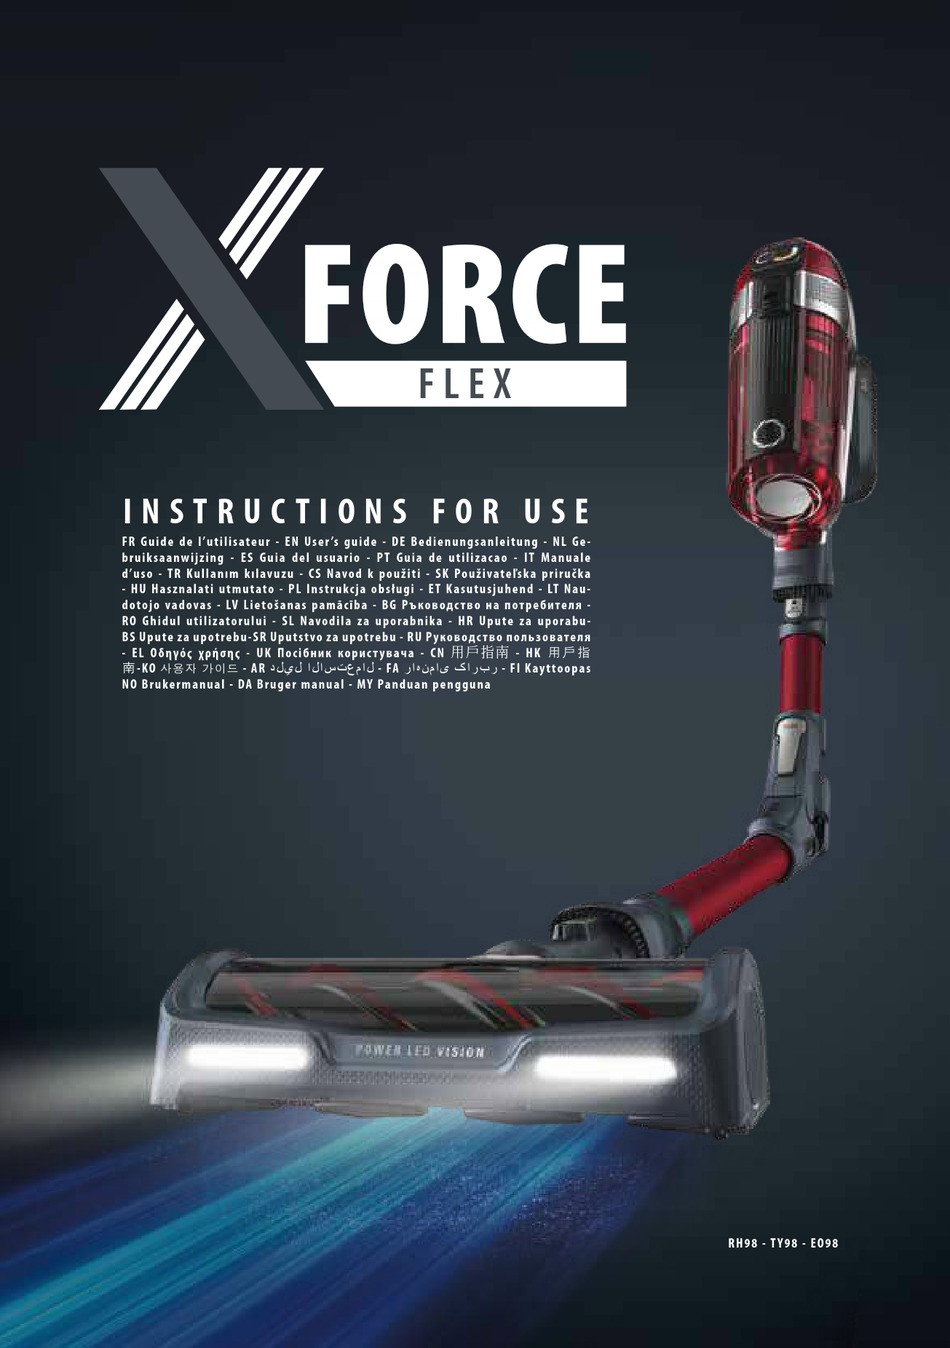 Сила флекс. X-Force Flex 11.60 ty98. Инструкция к ручному пылесосу Tefal x-Force Flex rh98/ty98/eo98.